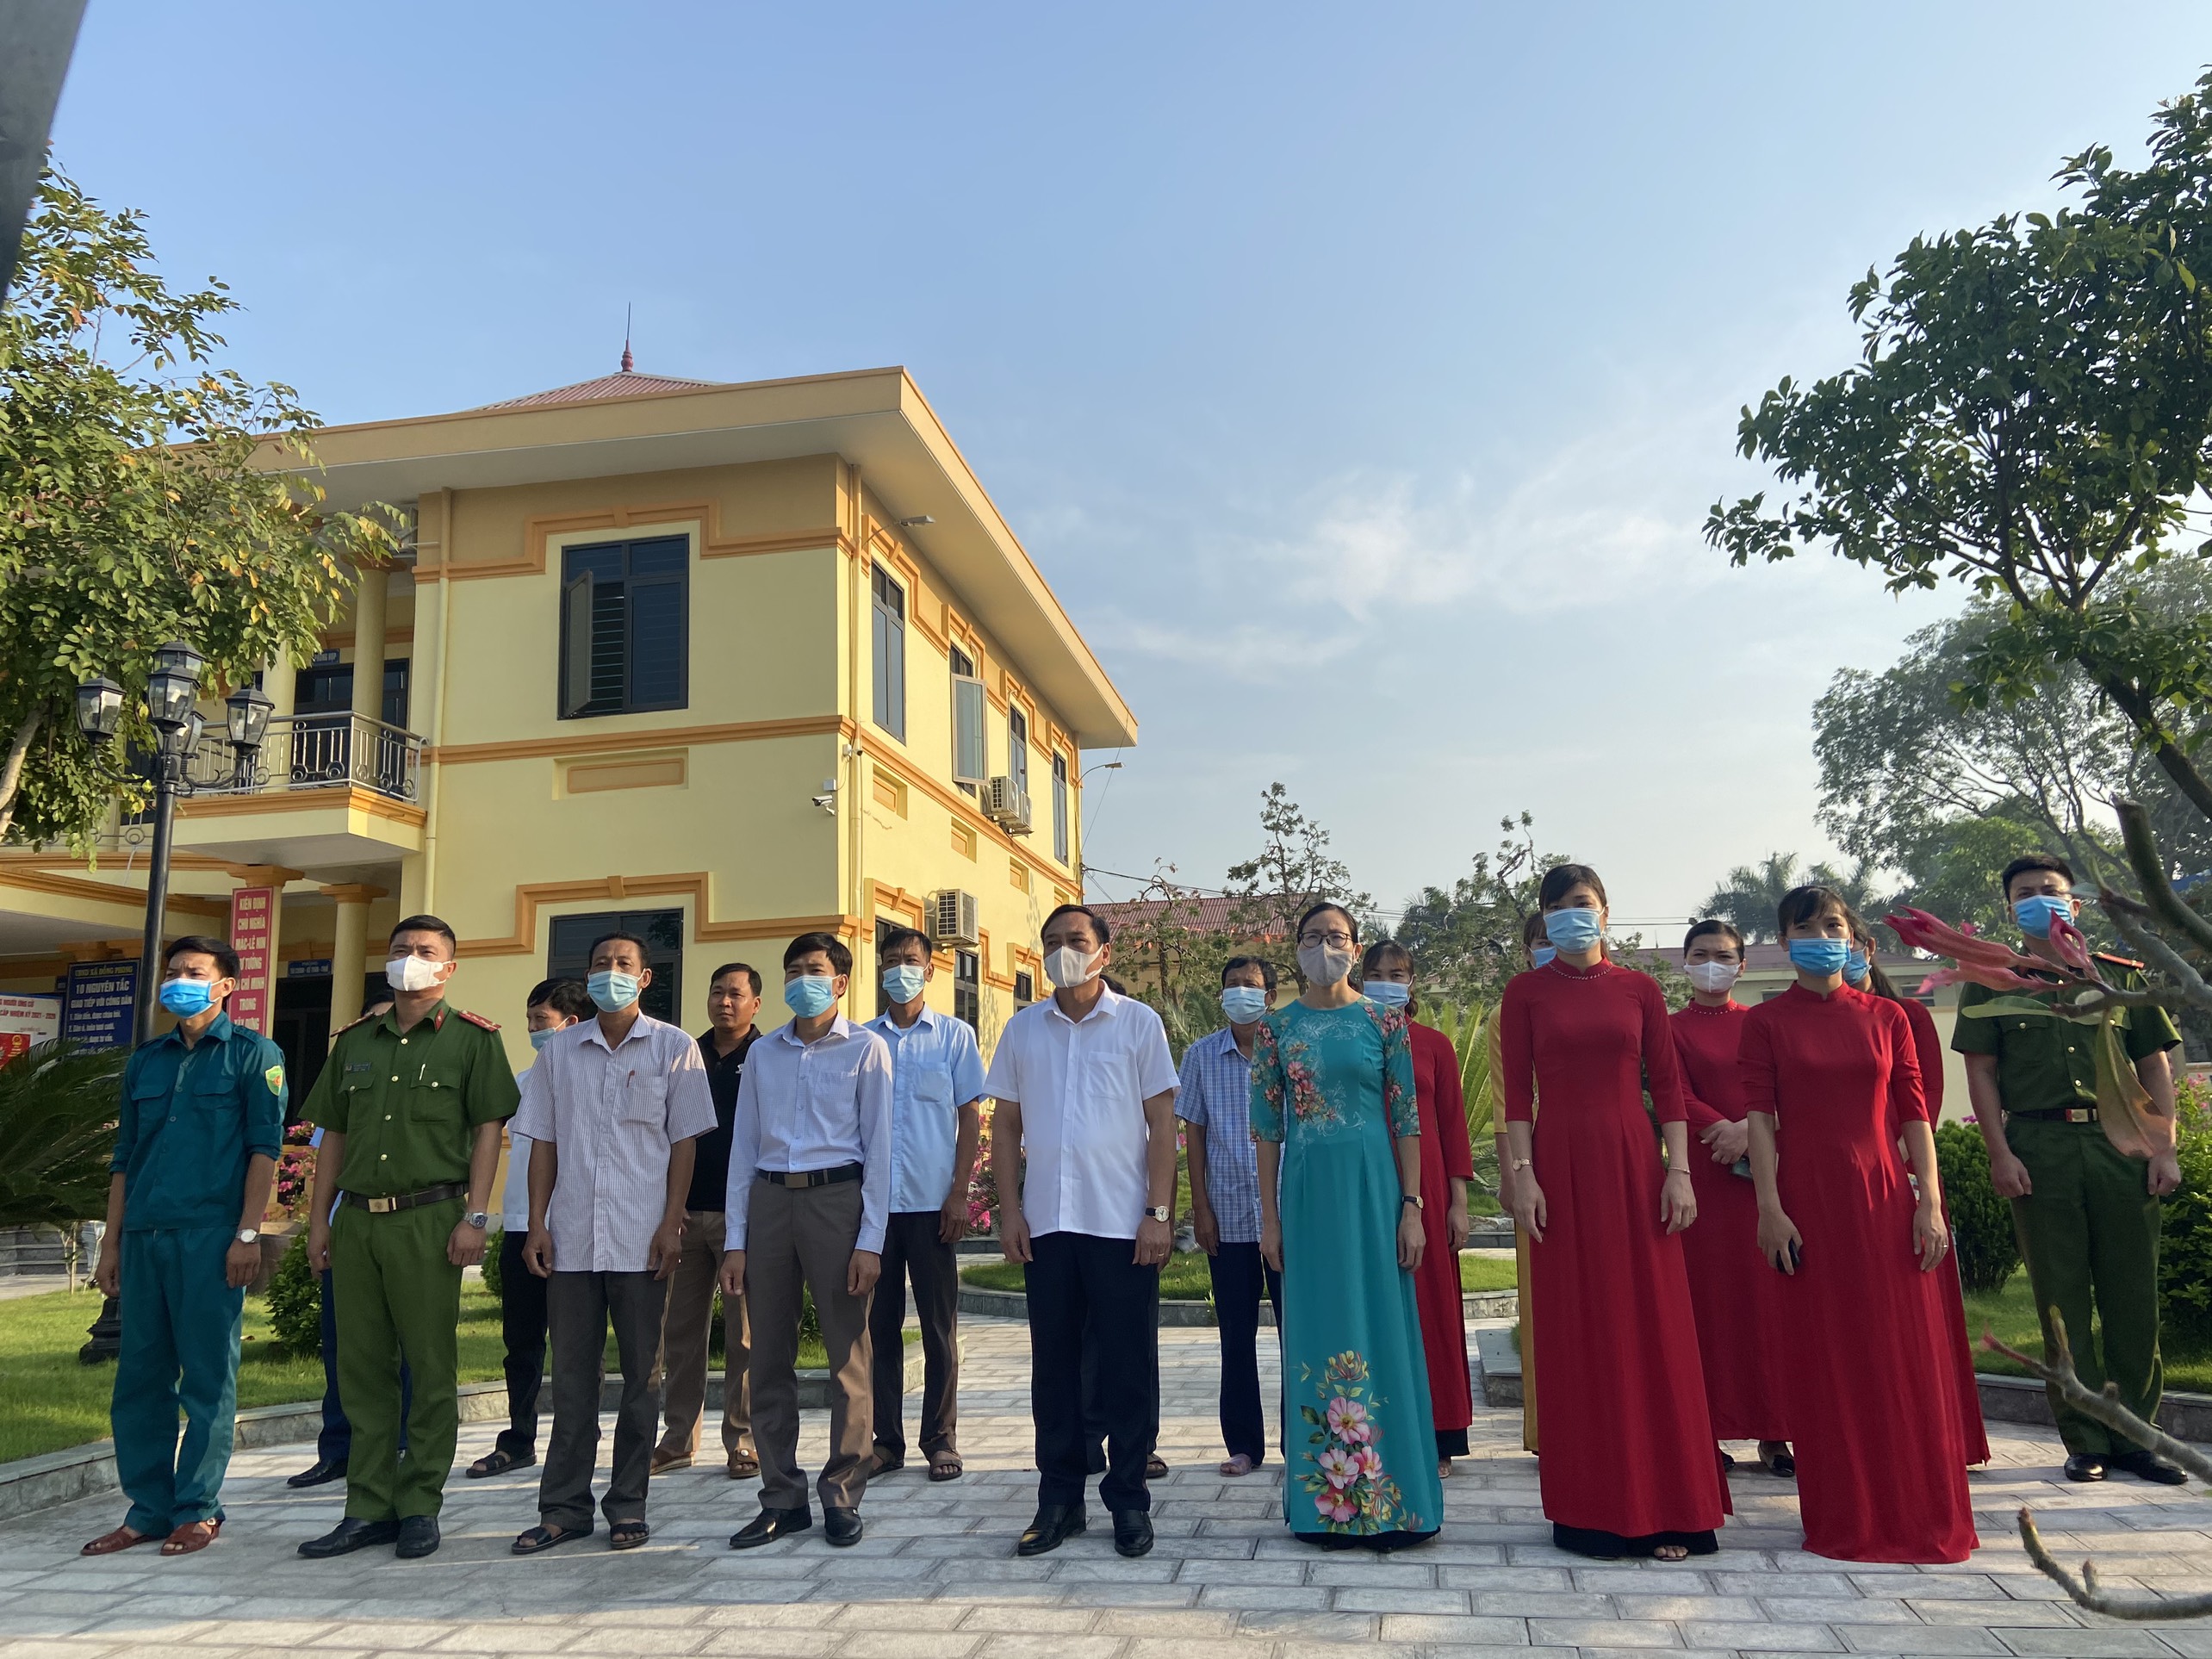 UBND xã Đồng Phong dâng hoa tưởng niệm 131 năm ngày sinh Chủ tịch Hồ Chí Minh